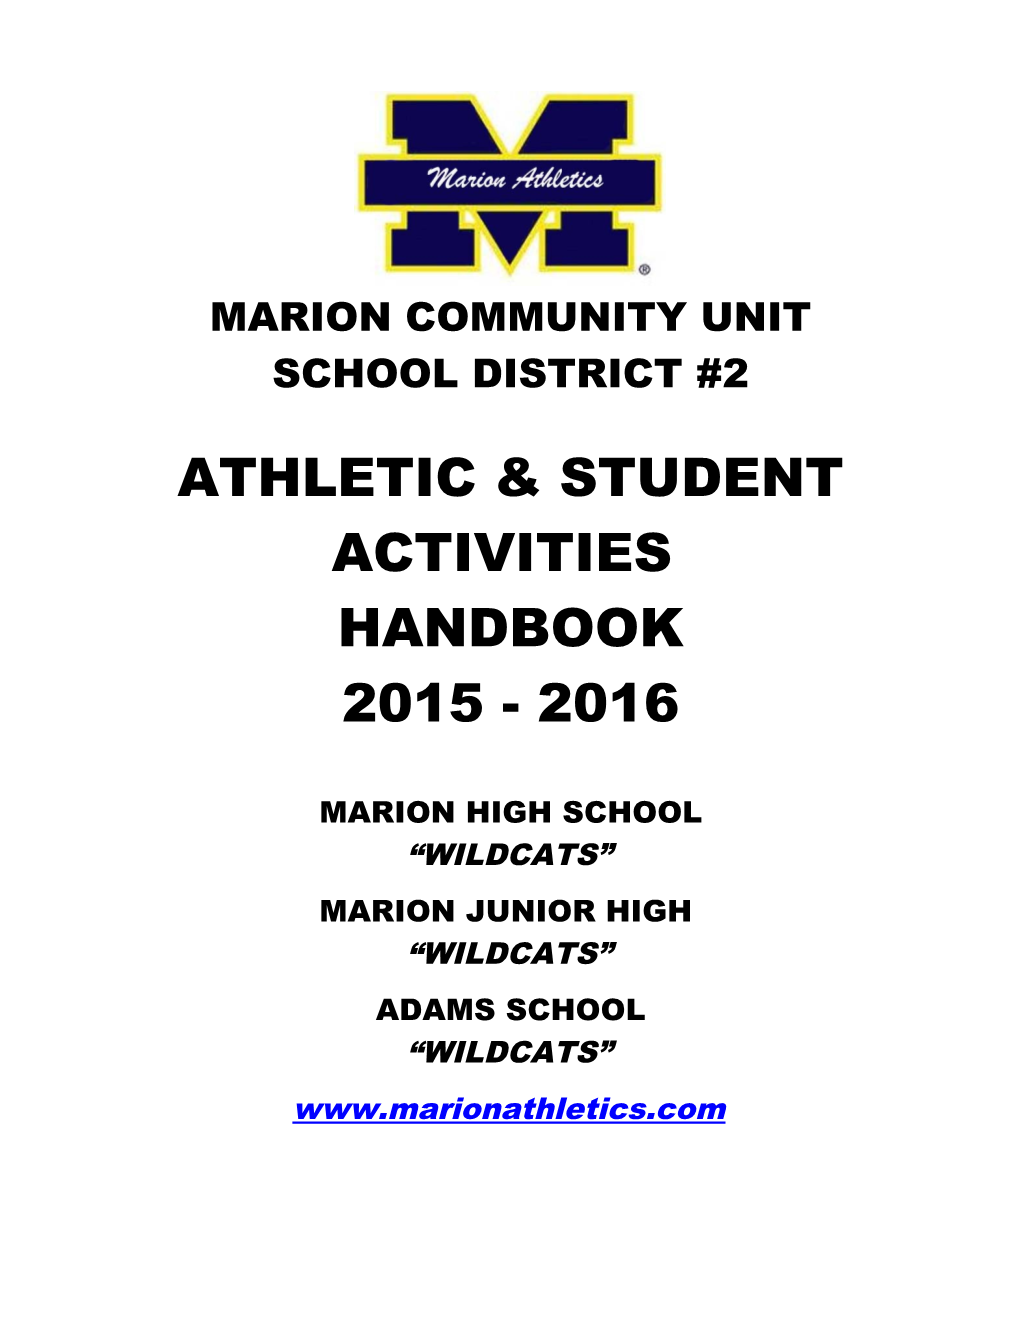 Marion Community Unit